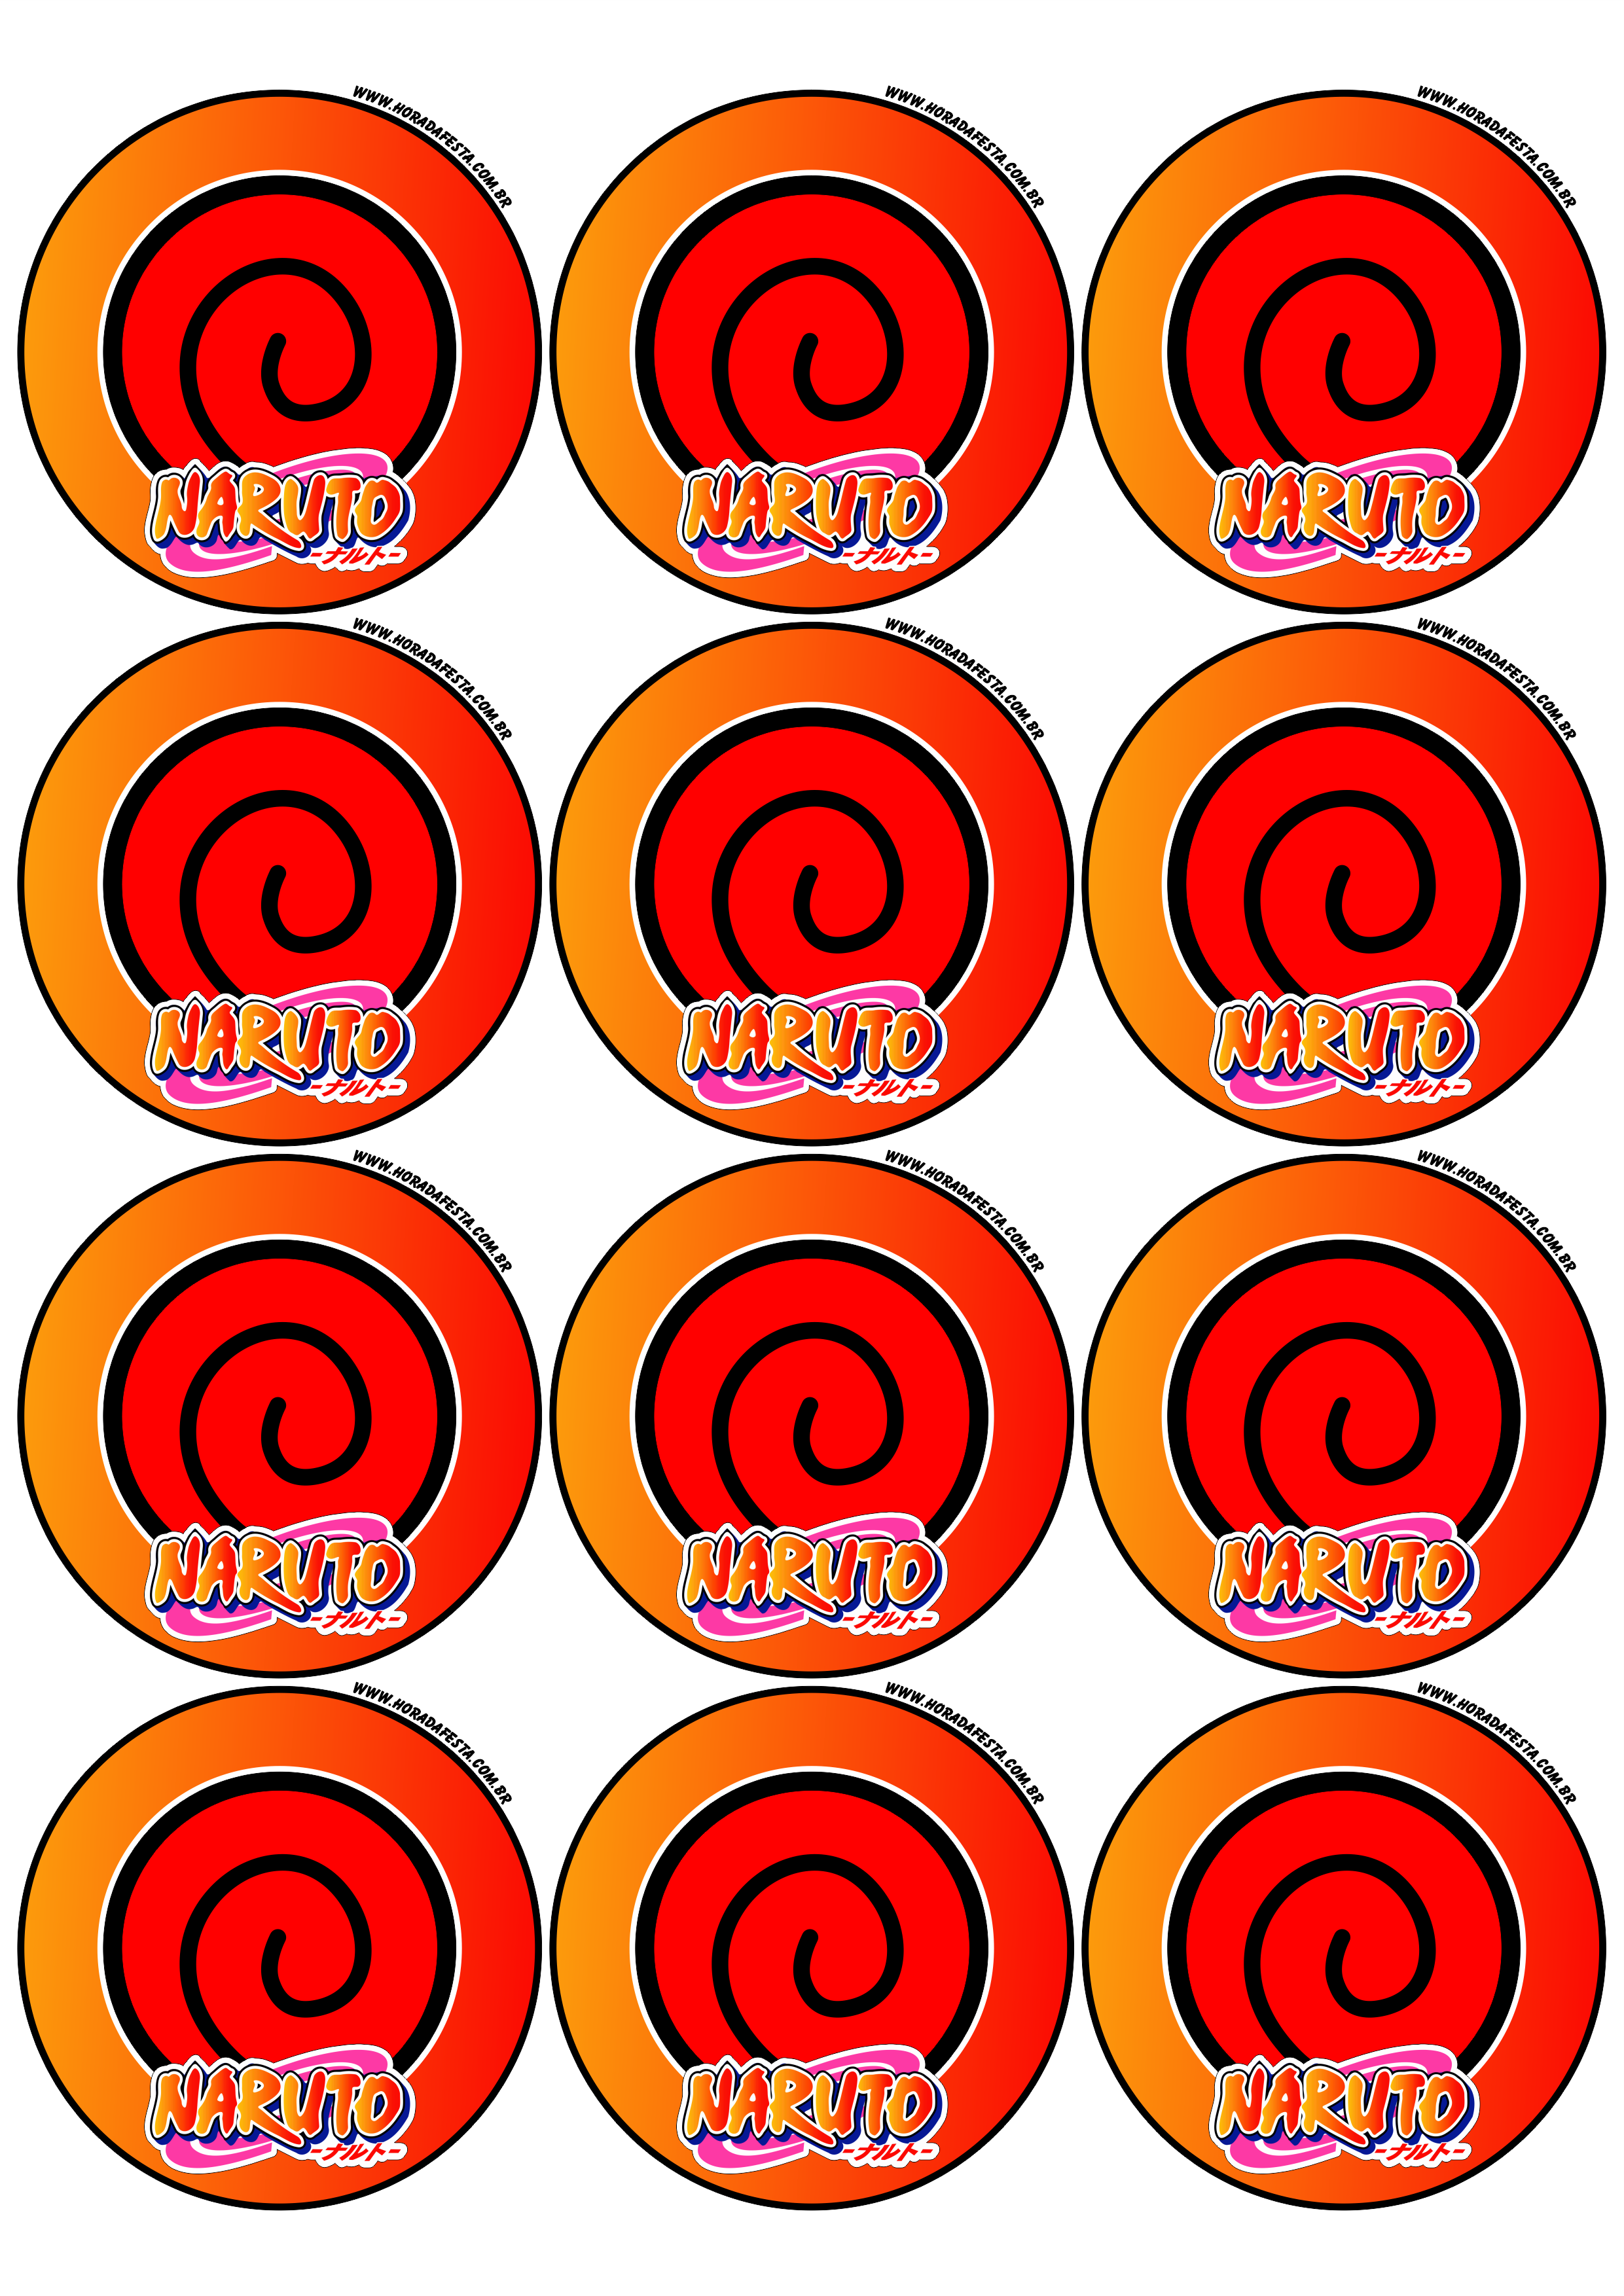 Naruto Shippuden adesivo redondo símbolo clã Uzumaki decoração de festas artigos de papelaria tag sticker 12 imagens png